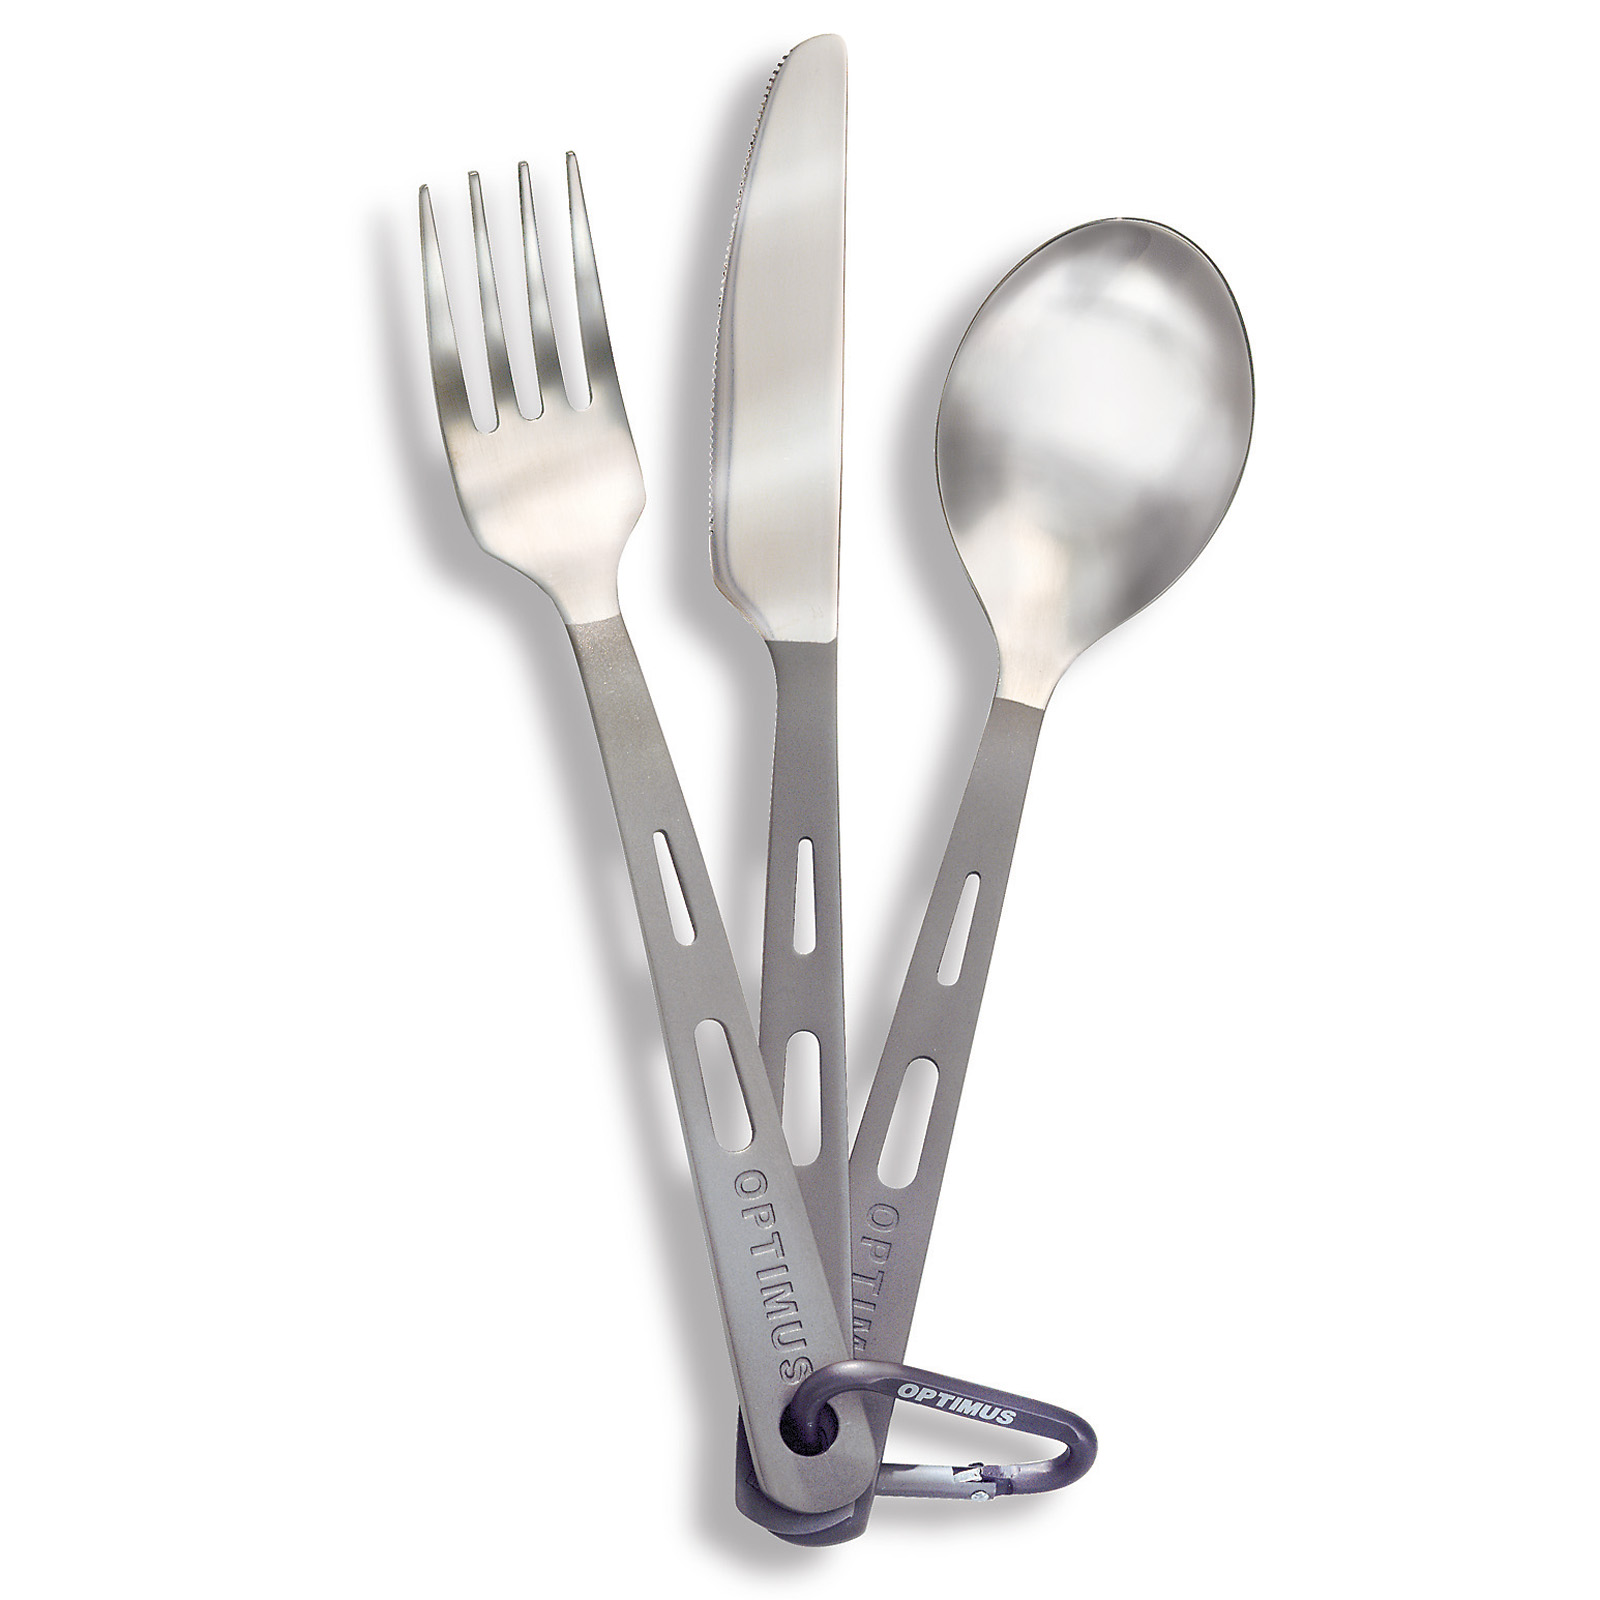 Productfoto van Optimus Titanium 3-Piece Cutlery Set